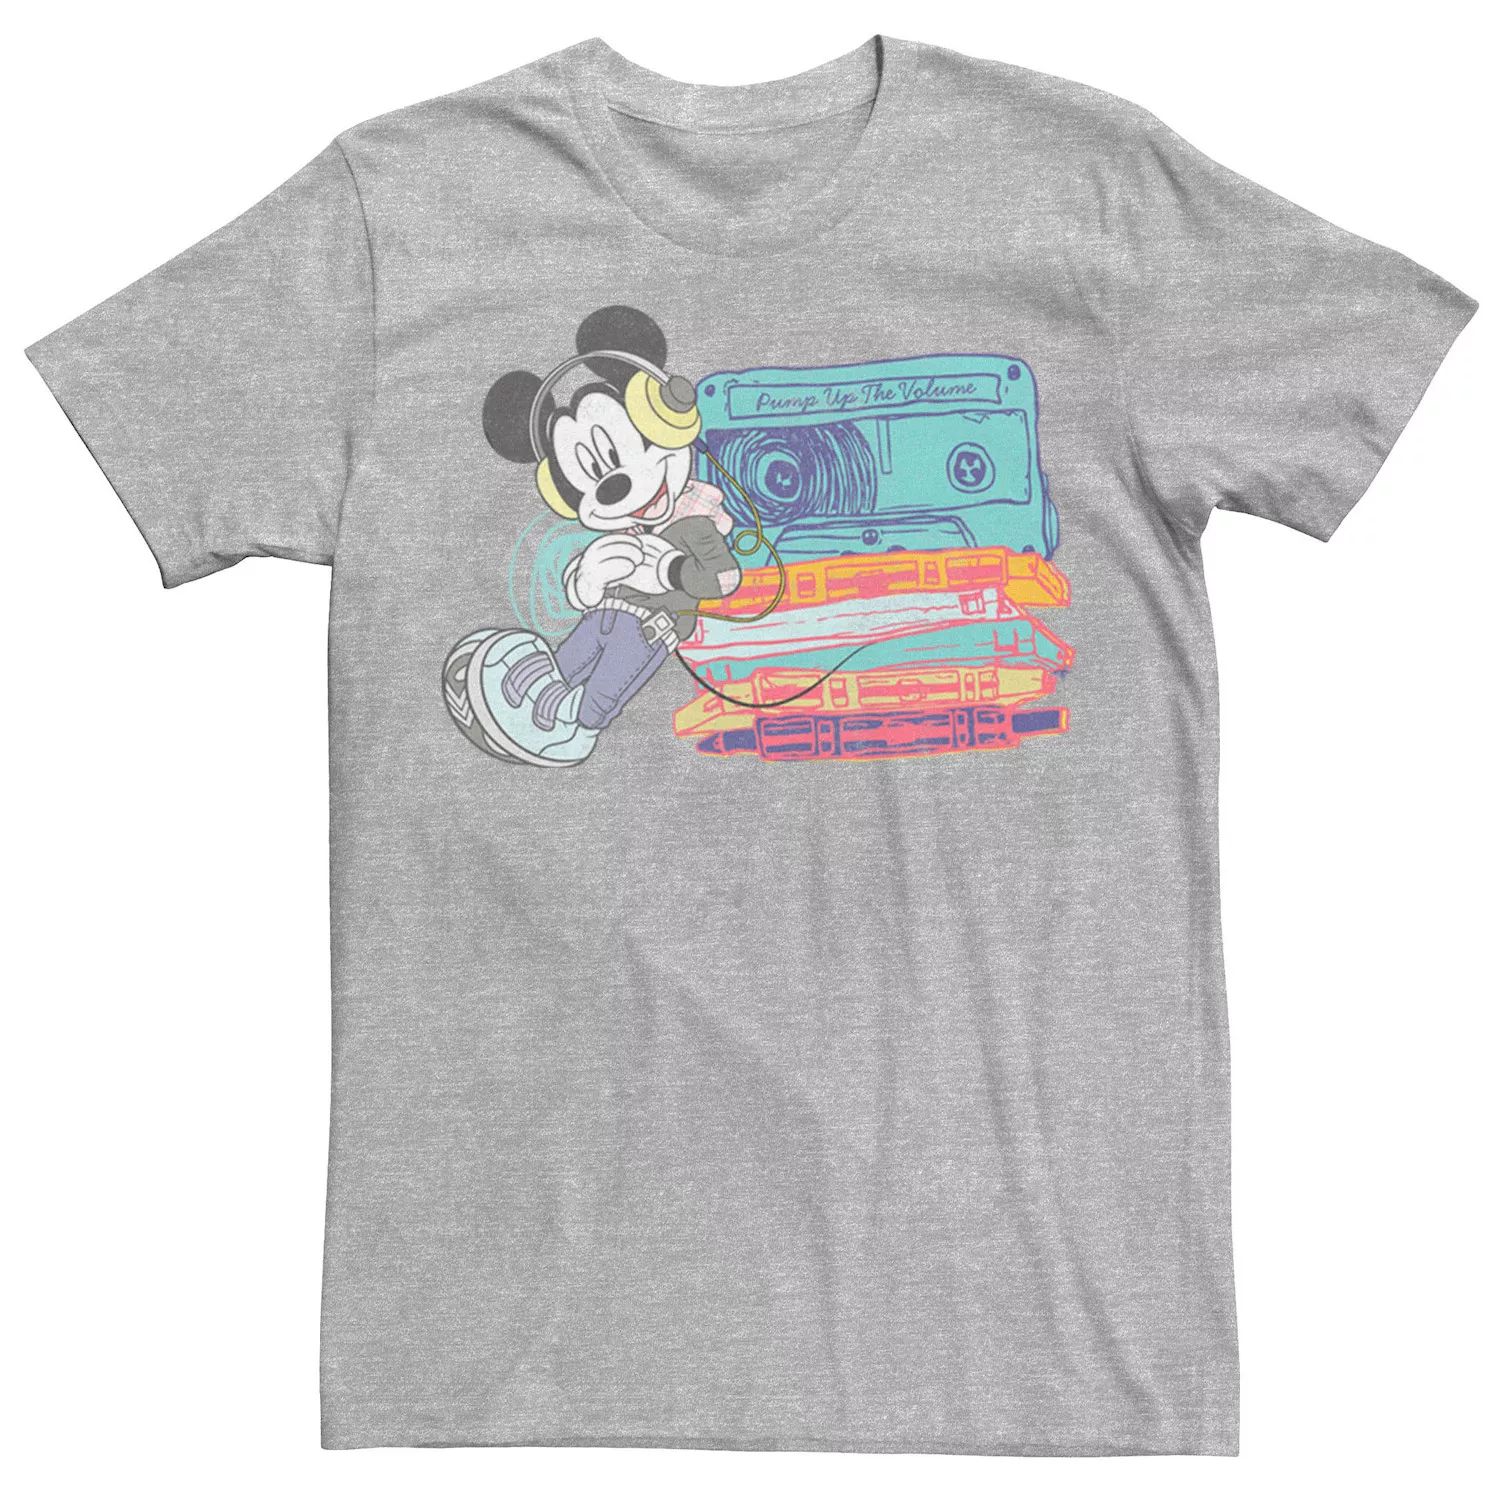 Мужская футболка с Микки Маусом и Микки Маусом Disney футболка с микки маусом и граффити для мальчиков disney белый